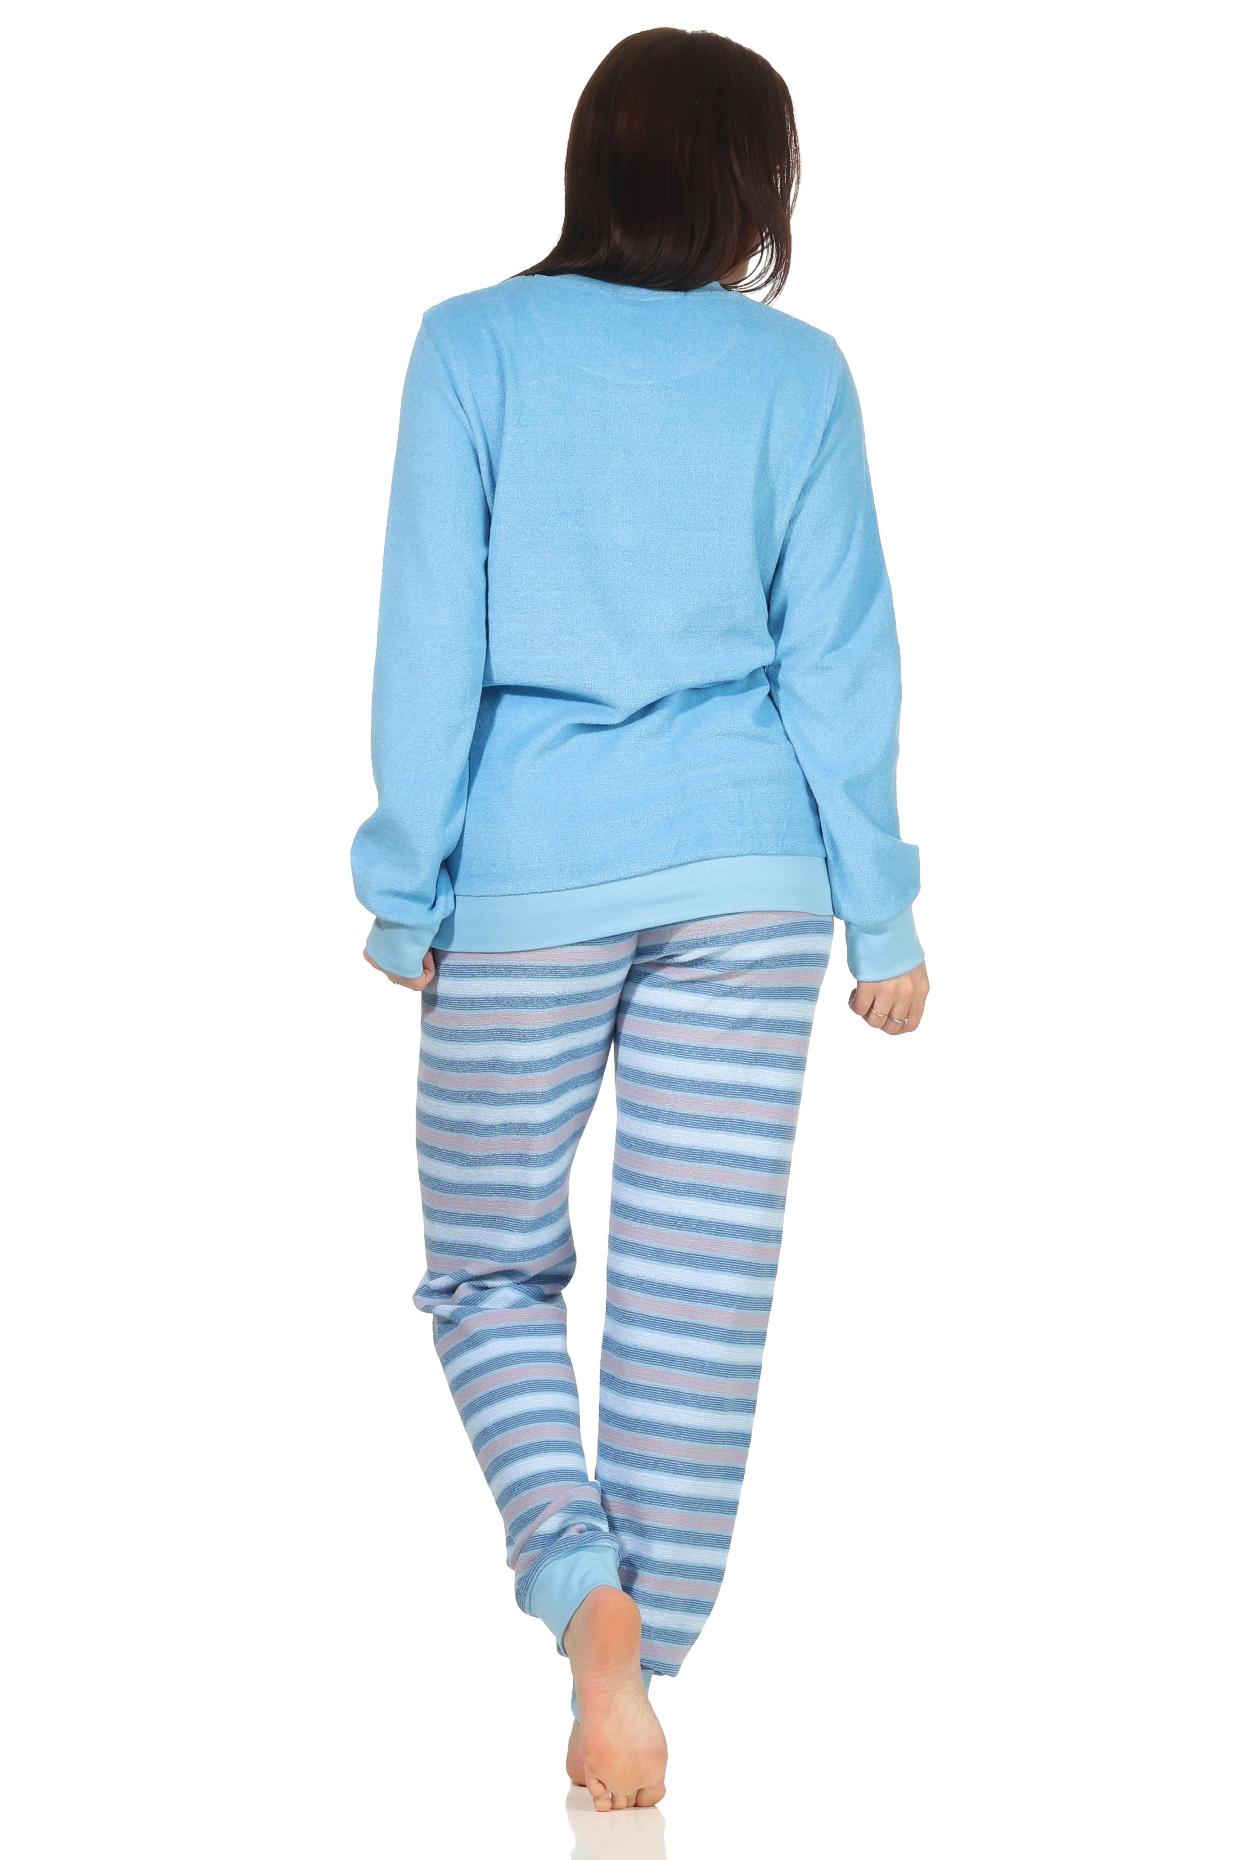 Damen Frottee Schlafanzug Pyjama mit Bündchen - Hose gestreift - auch in Übergrössen FALSCH